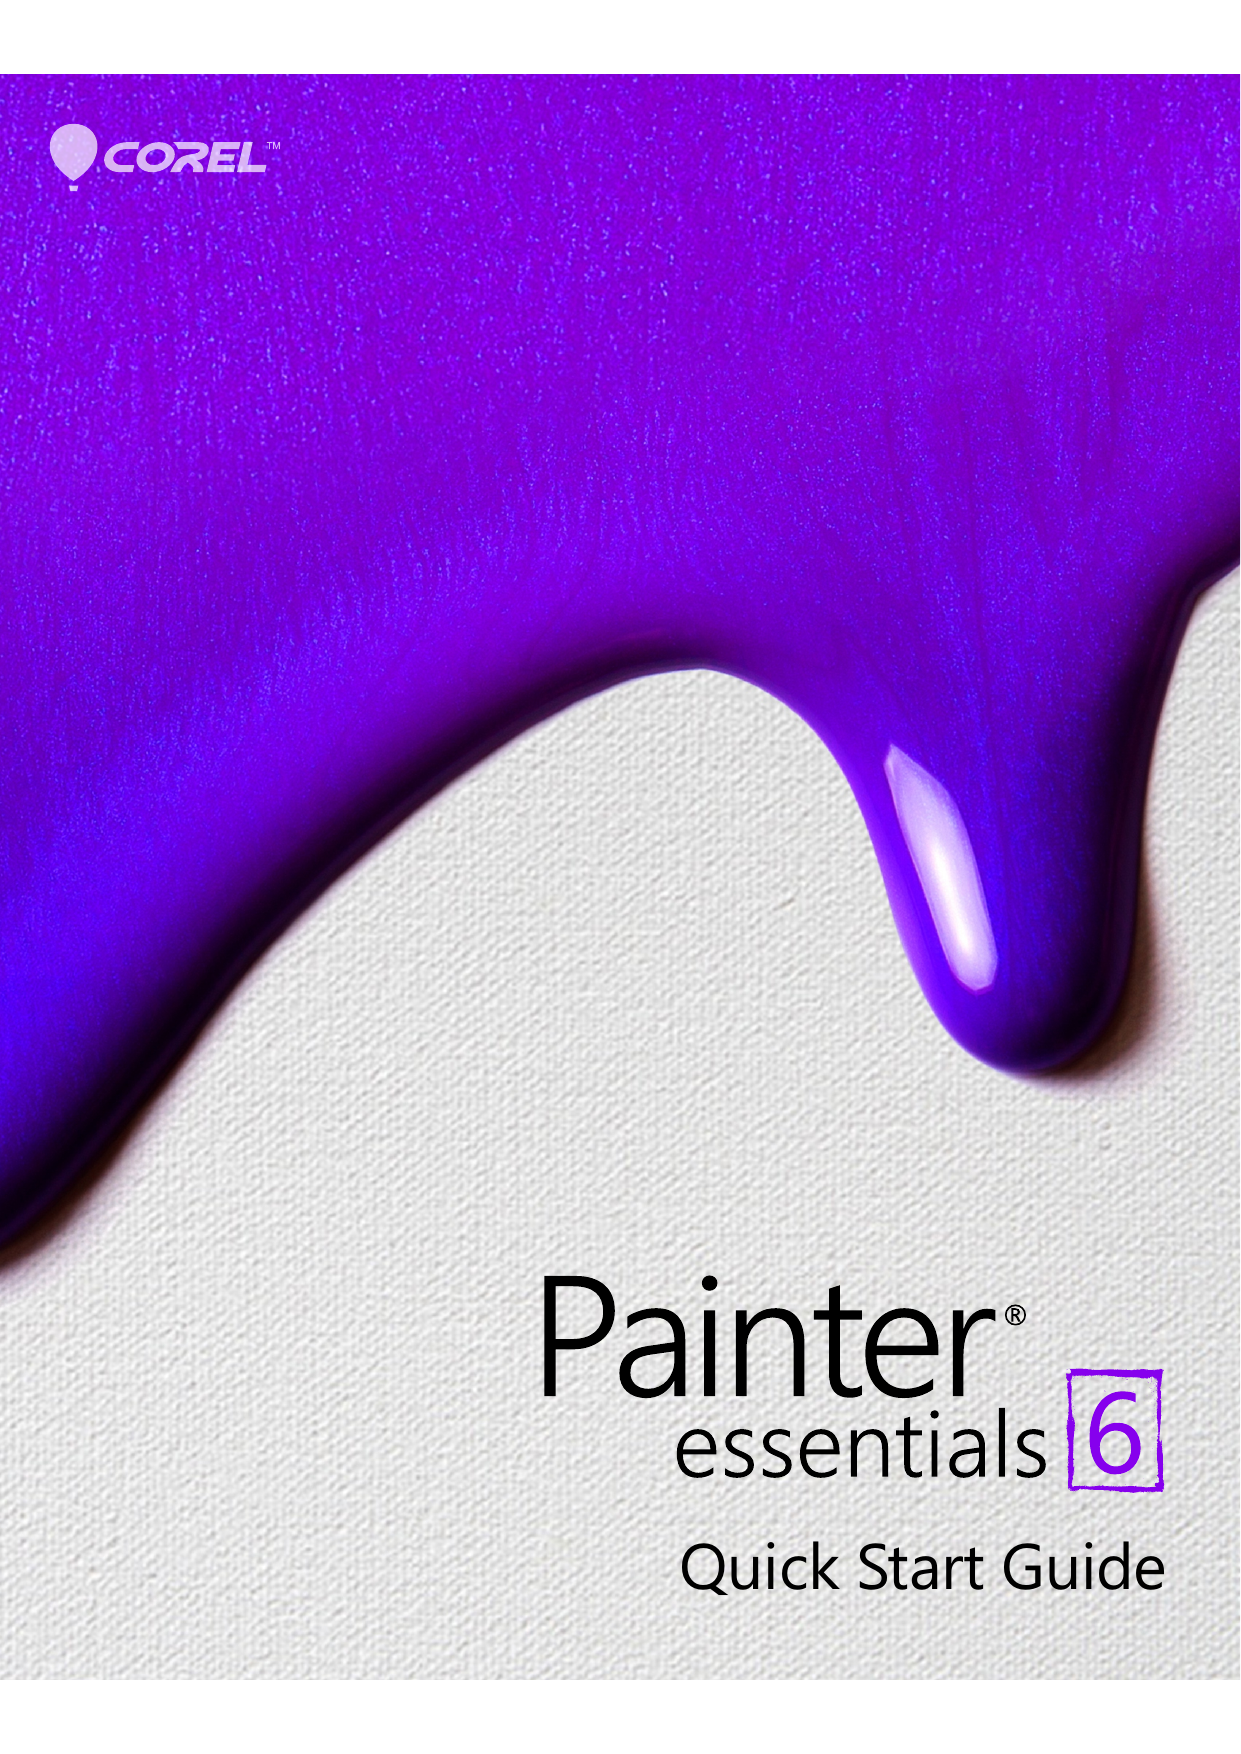 trace corel painter essentials 5